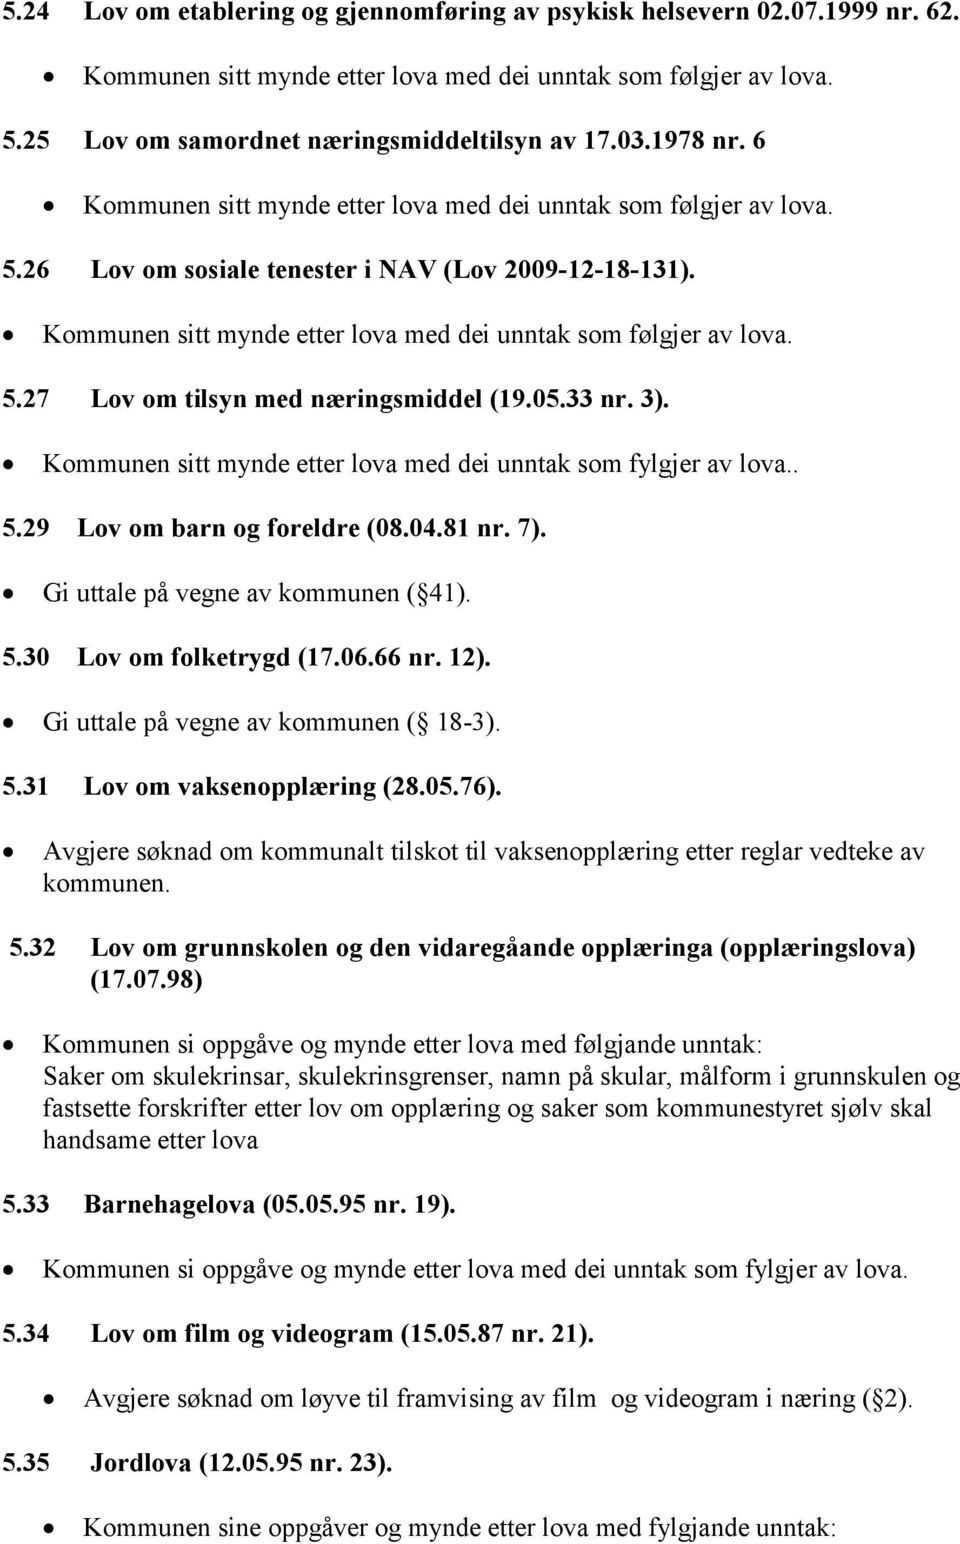 Gi uttale på vegne av kommunen ( 41). 5.30 Lov om folketrygd (17.06.66 nr. 12). Gi uttale på vegne av kommunen ( 18-3). 5.31 Lov om vaksenopplæring (28.05.76).